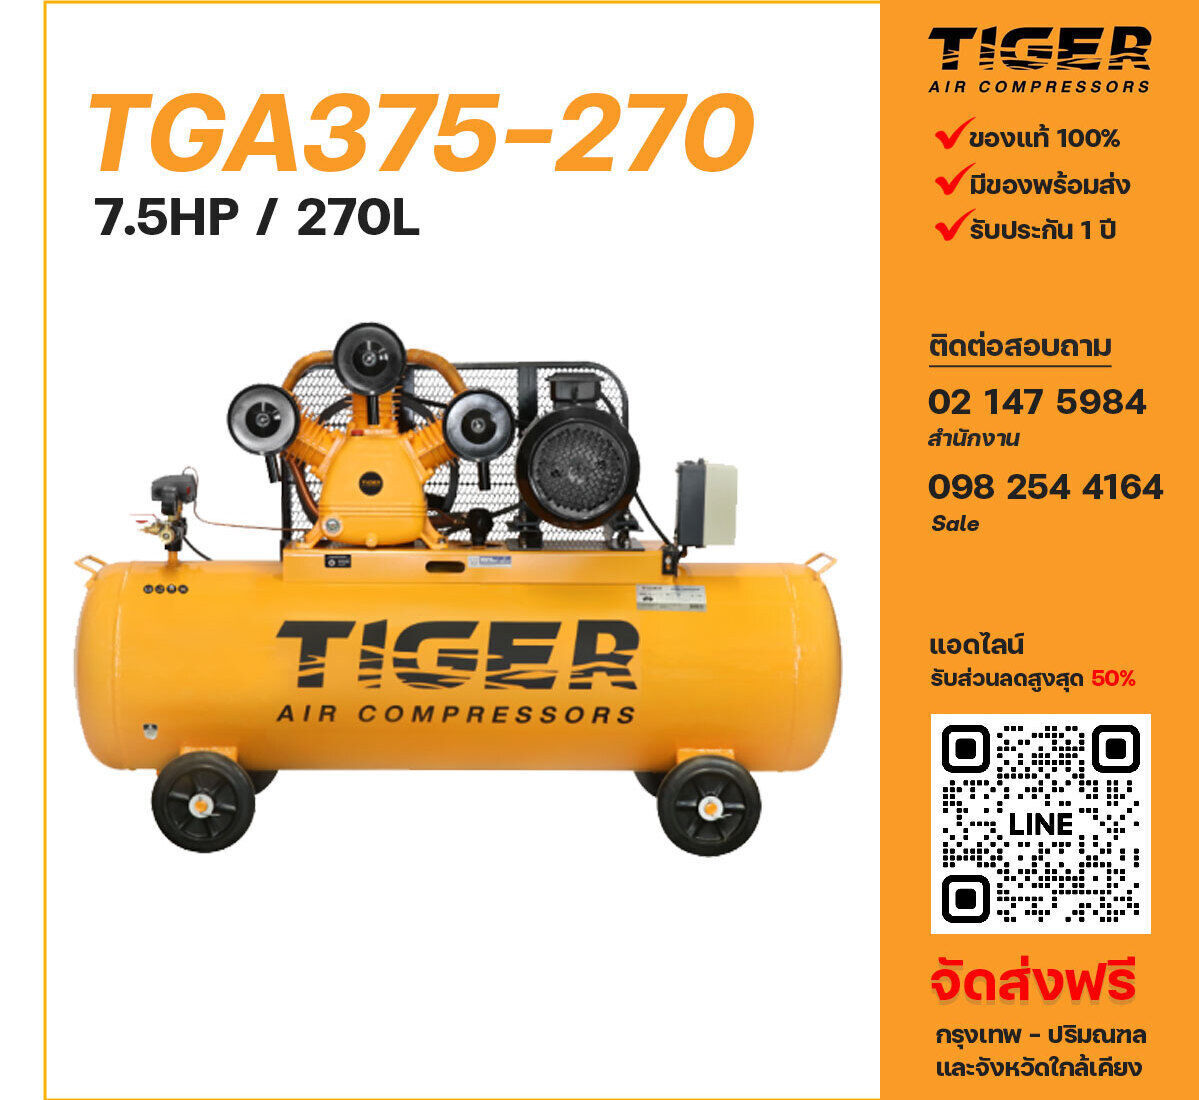 ปั๊มลมไทเกอร์ TIGER TGA375-270 380V ปั๊มลมลูกสูบ ขนาด 3 สูบ 7.5 แรงม้า 270 ลิตร TIGER พร้อมมอเตอร์ ไฟ 380V ส่งฟรี กรุงเทพฯ-ปริมณฑล รับประกัน 1 ปี